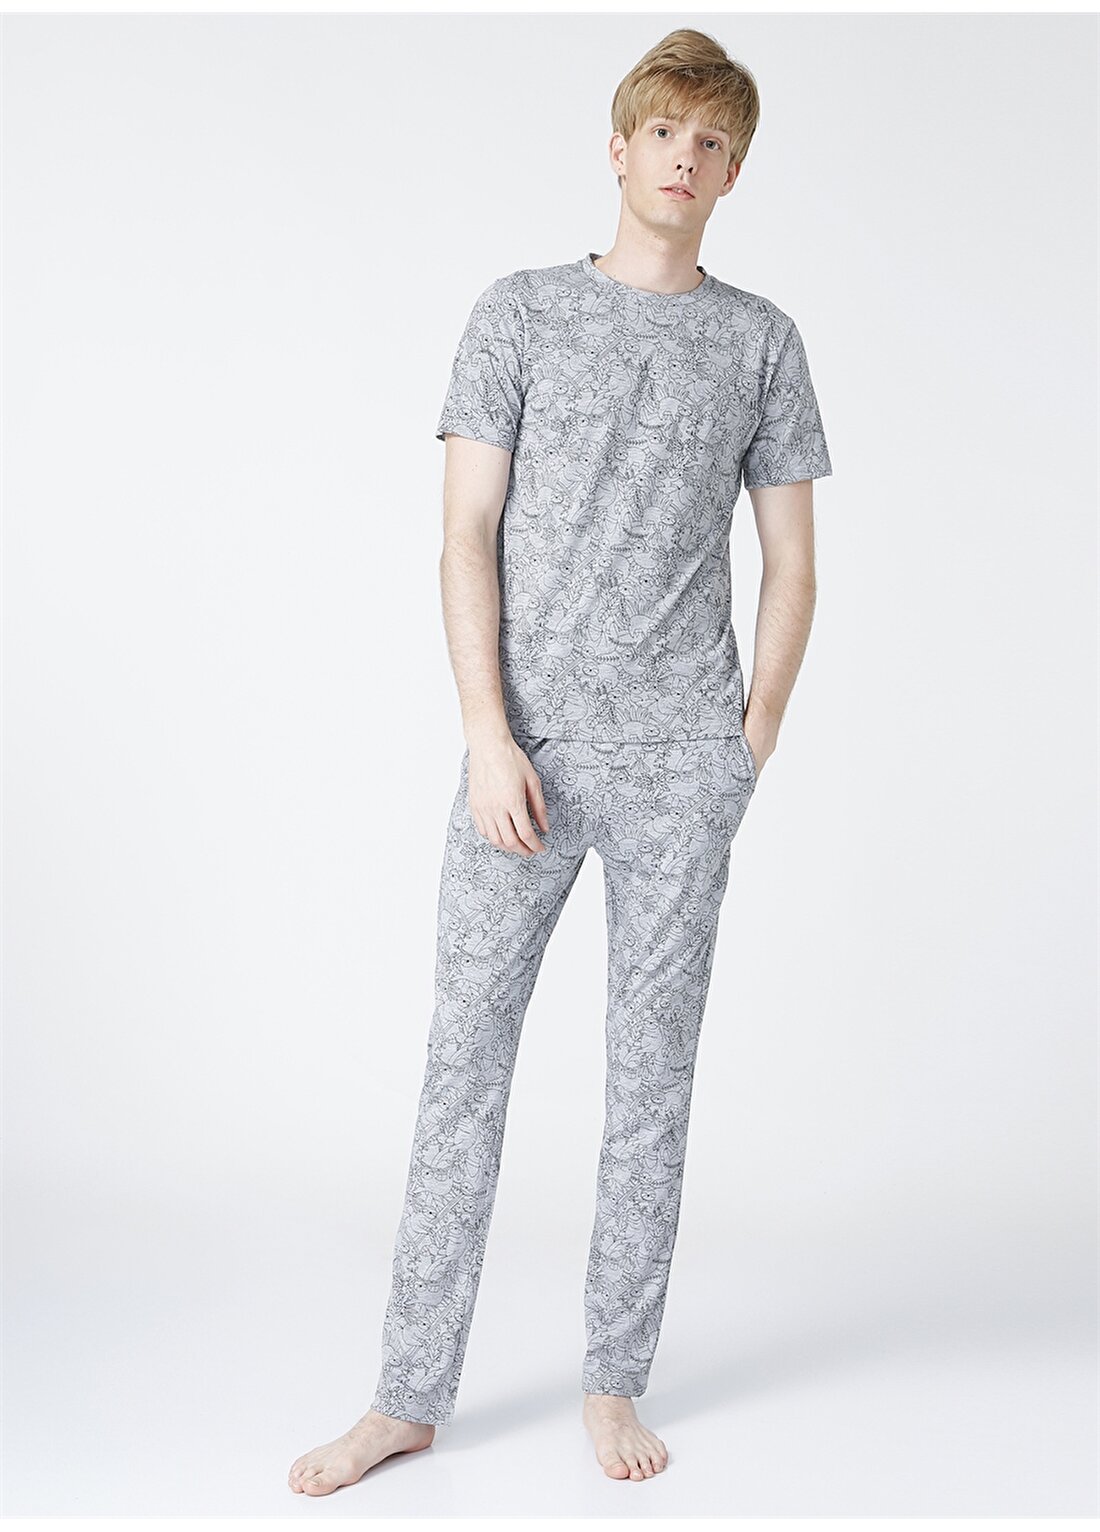 Fabrika Standart Desenli Antrasit Erkek Pijama Takımı